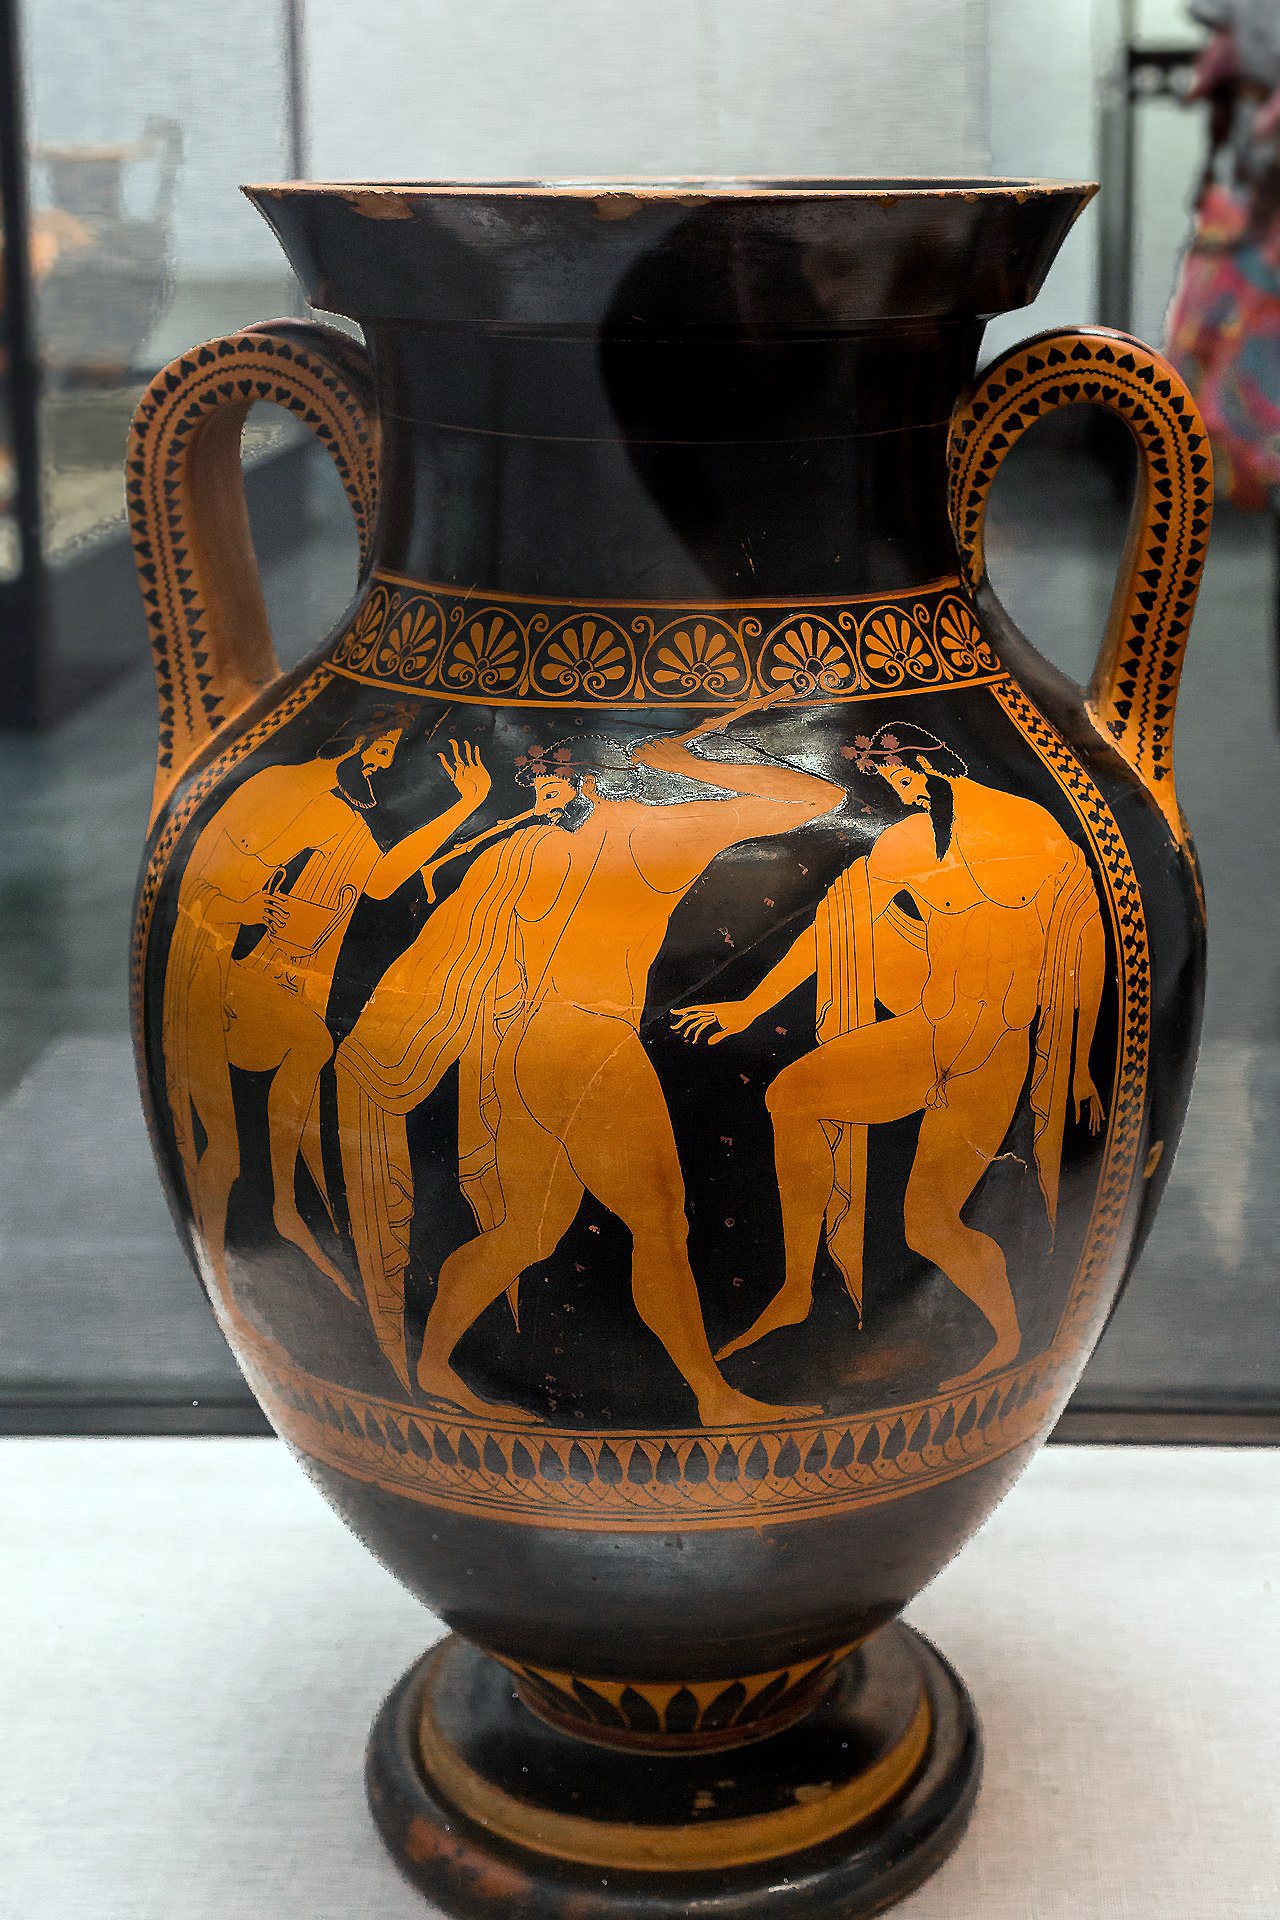 Euthymides, Three Revelers (Athenian red-figure amphora), c. 510 B.C.E., 24 inches high (Staatliche Antikensammlungen, Munich)